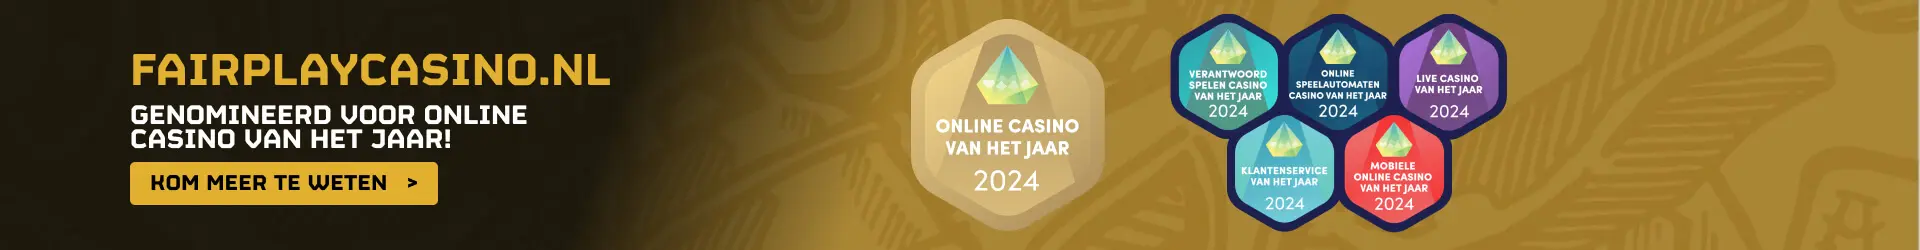 Stem op Fair Play Online Casino voor de Verkiezing van Online Casino van het Jaar 2024!